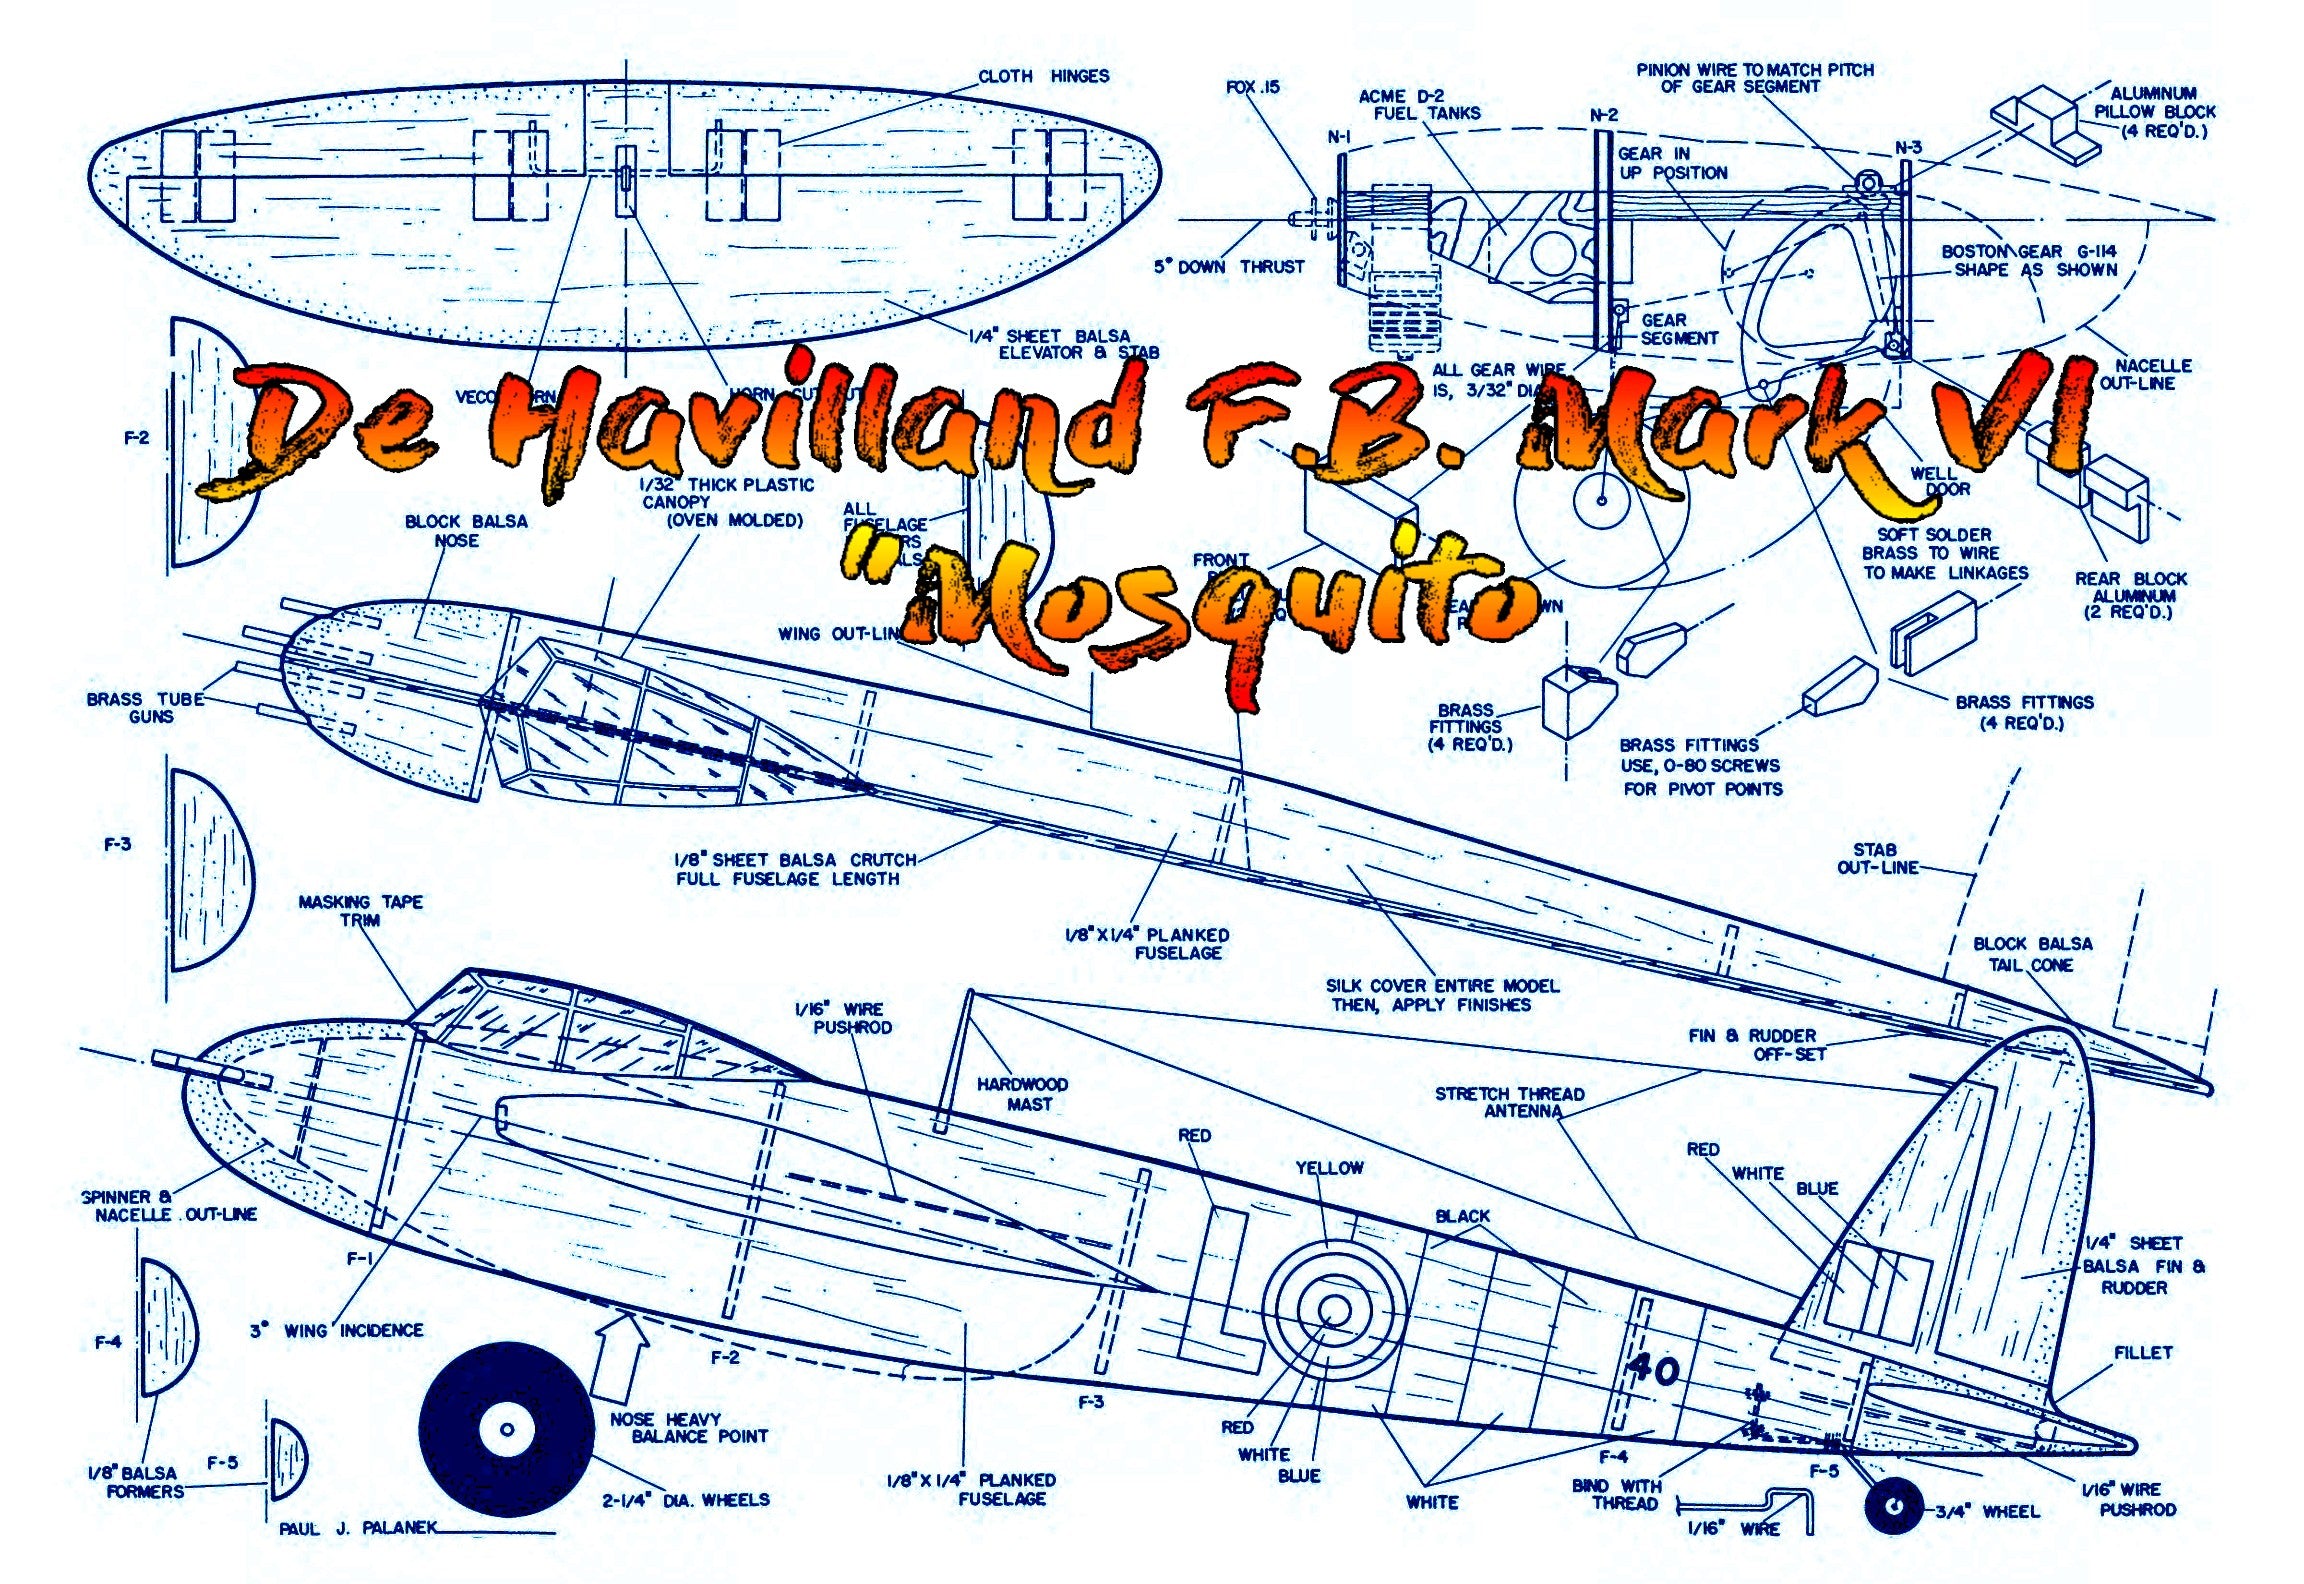 full size printed plan control line  scale 1:17 de havilland f.b. mark vi'  "mosquito" w/s 38"